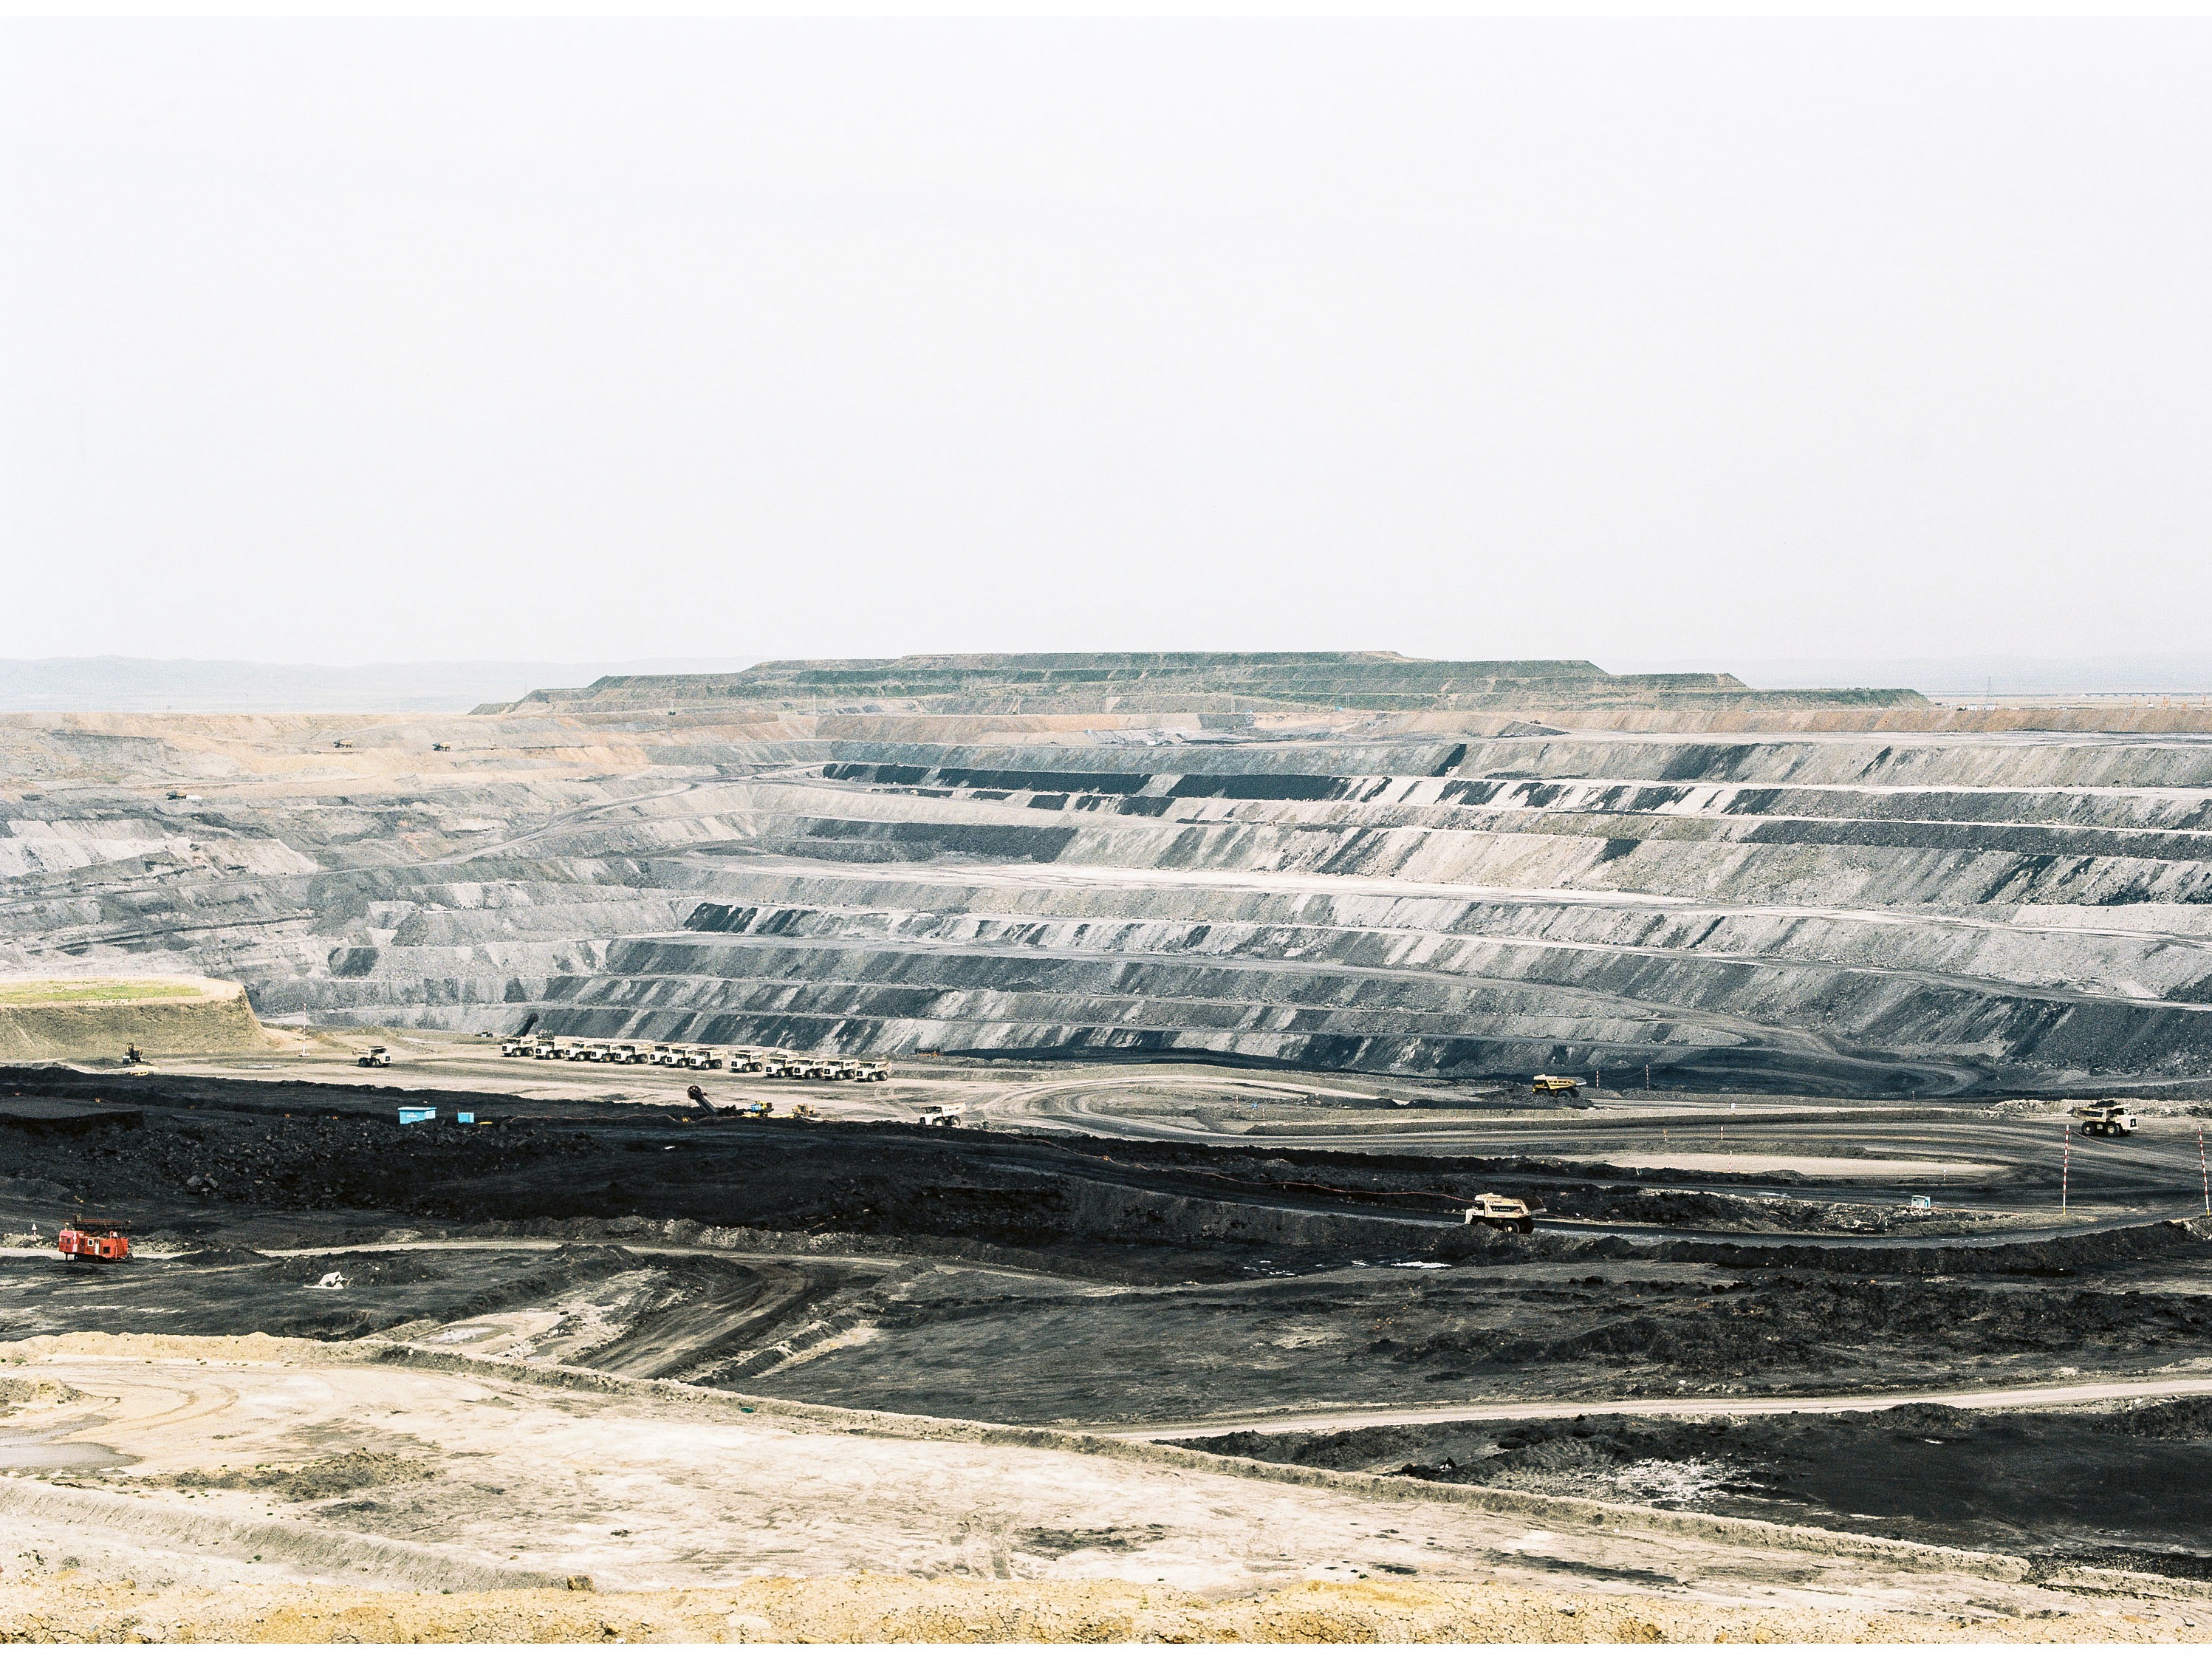 锡林郭勒盟天地煤矿图片